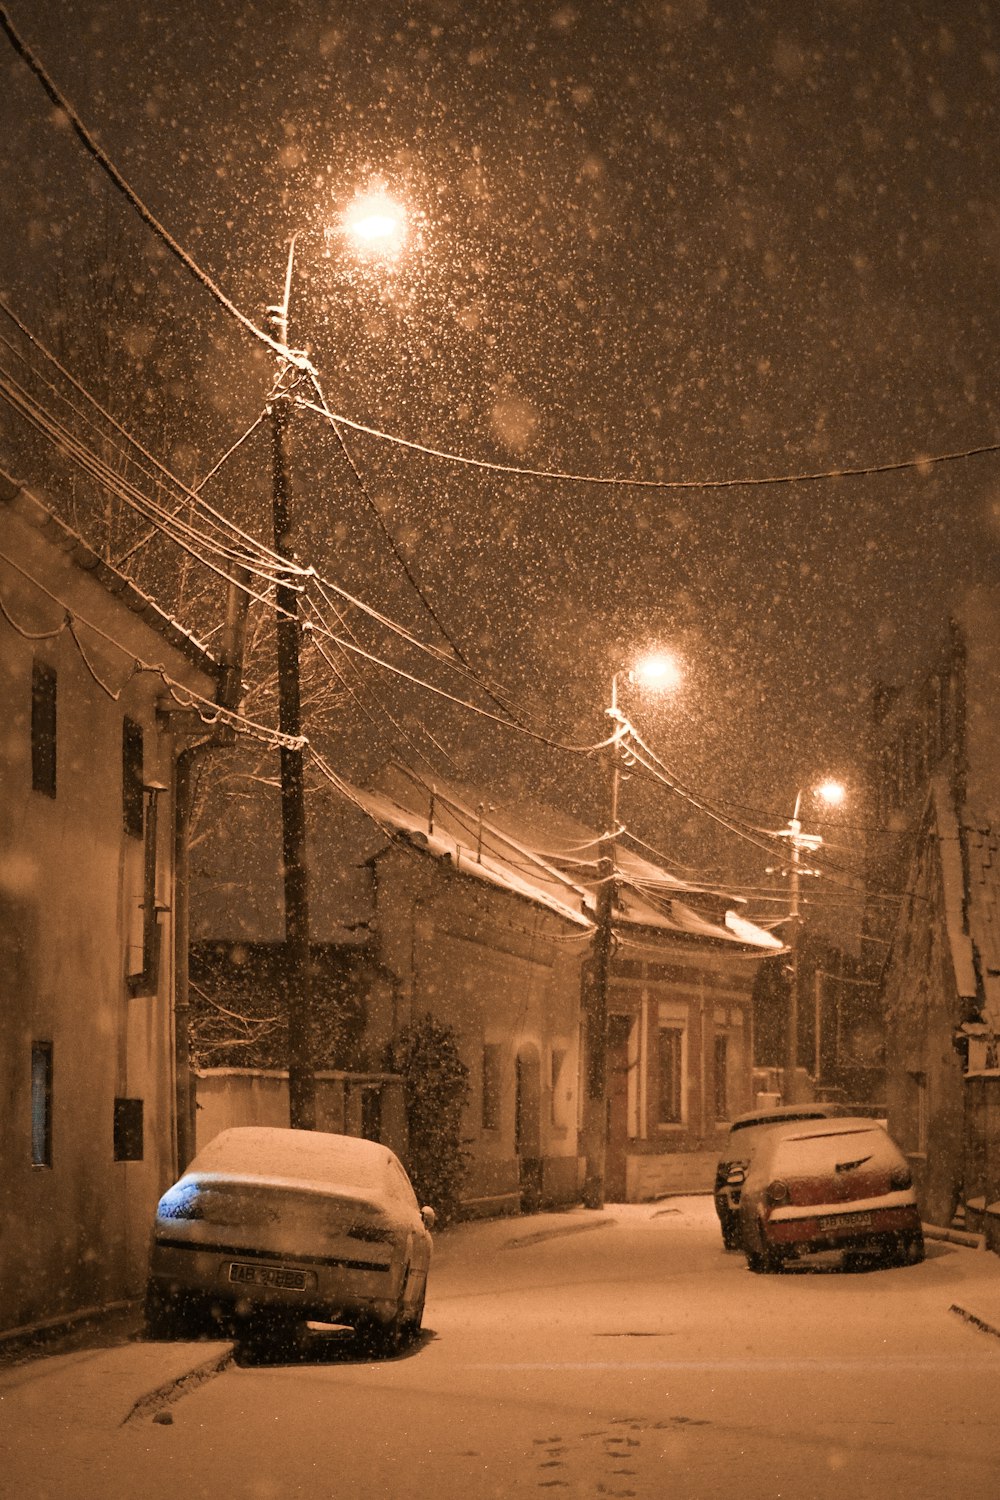 Dos coches aparcados en una calle nevada por la noche